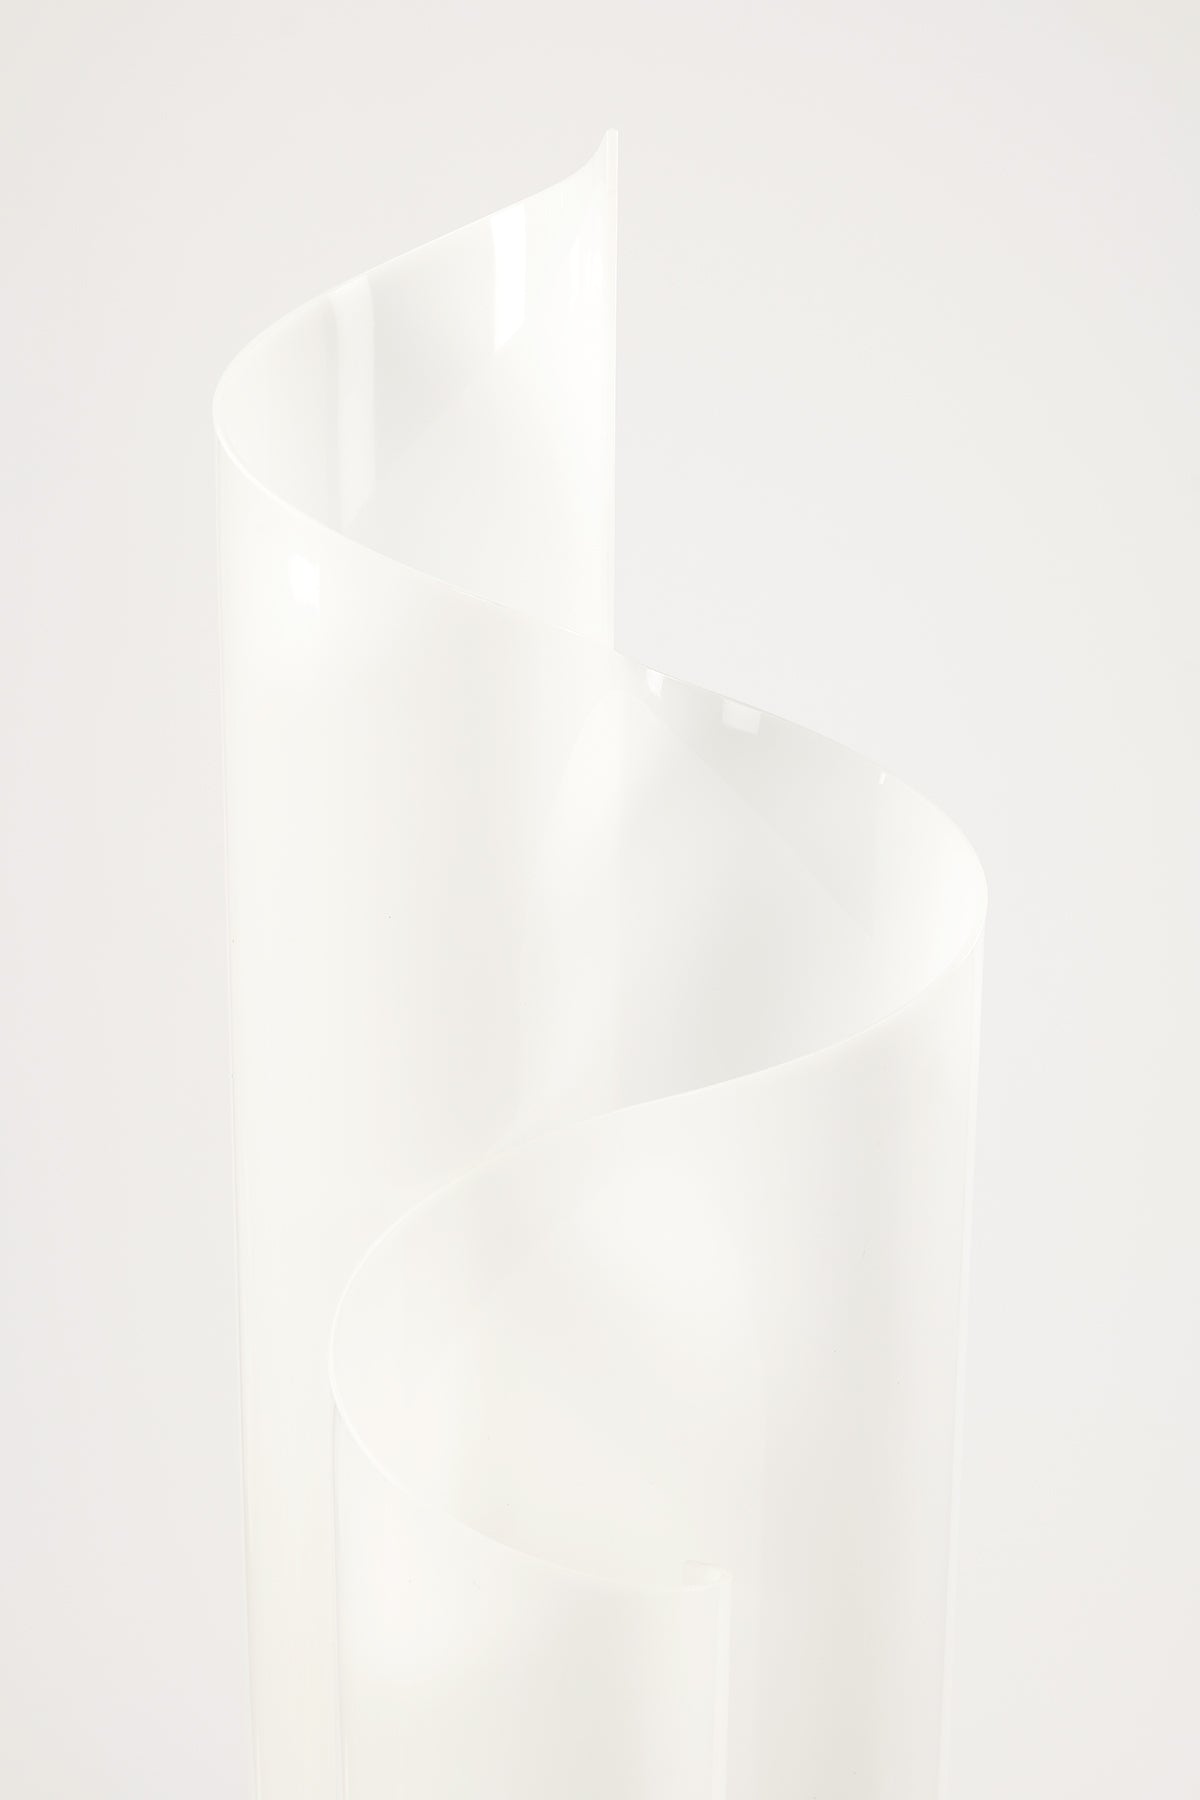 Vico Magistretti for Artemide "Mezza Chimera" Table Lamp